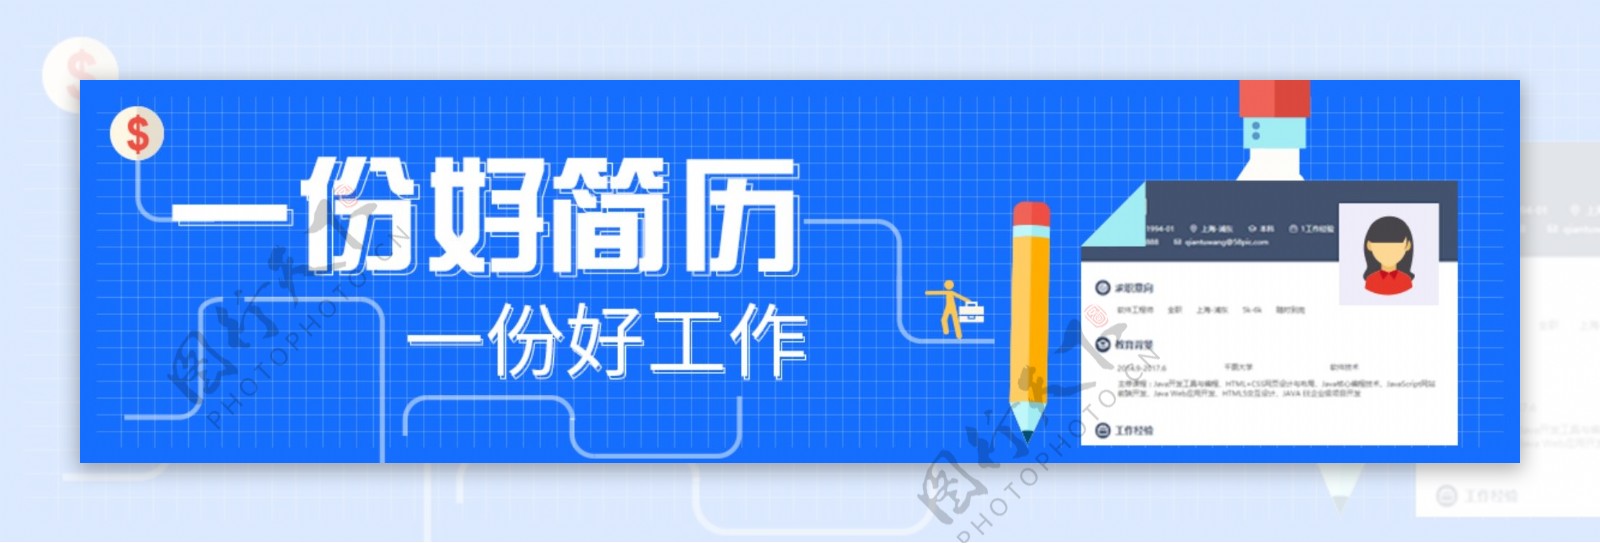 扁平化简历时尚宣传banner海报设计